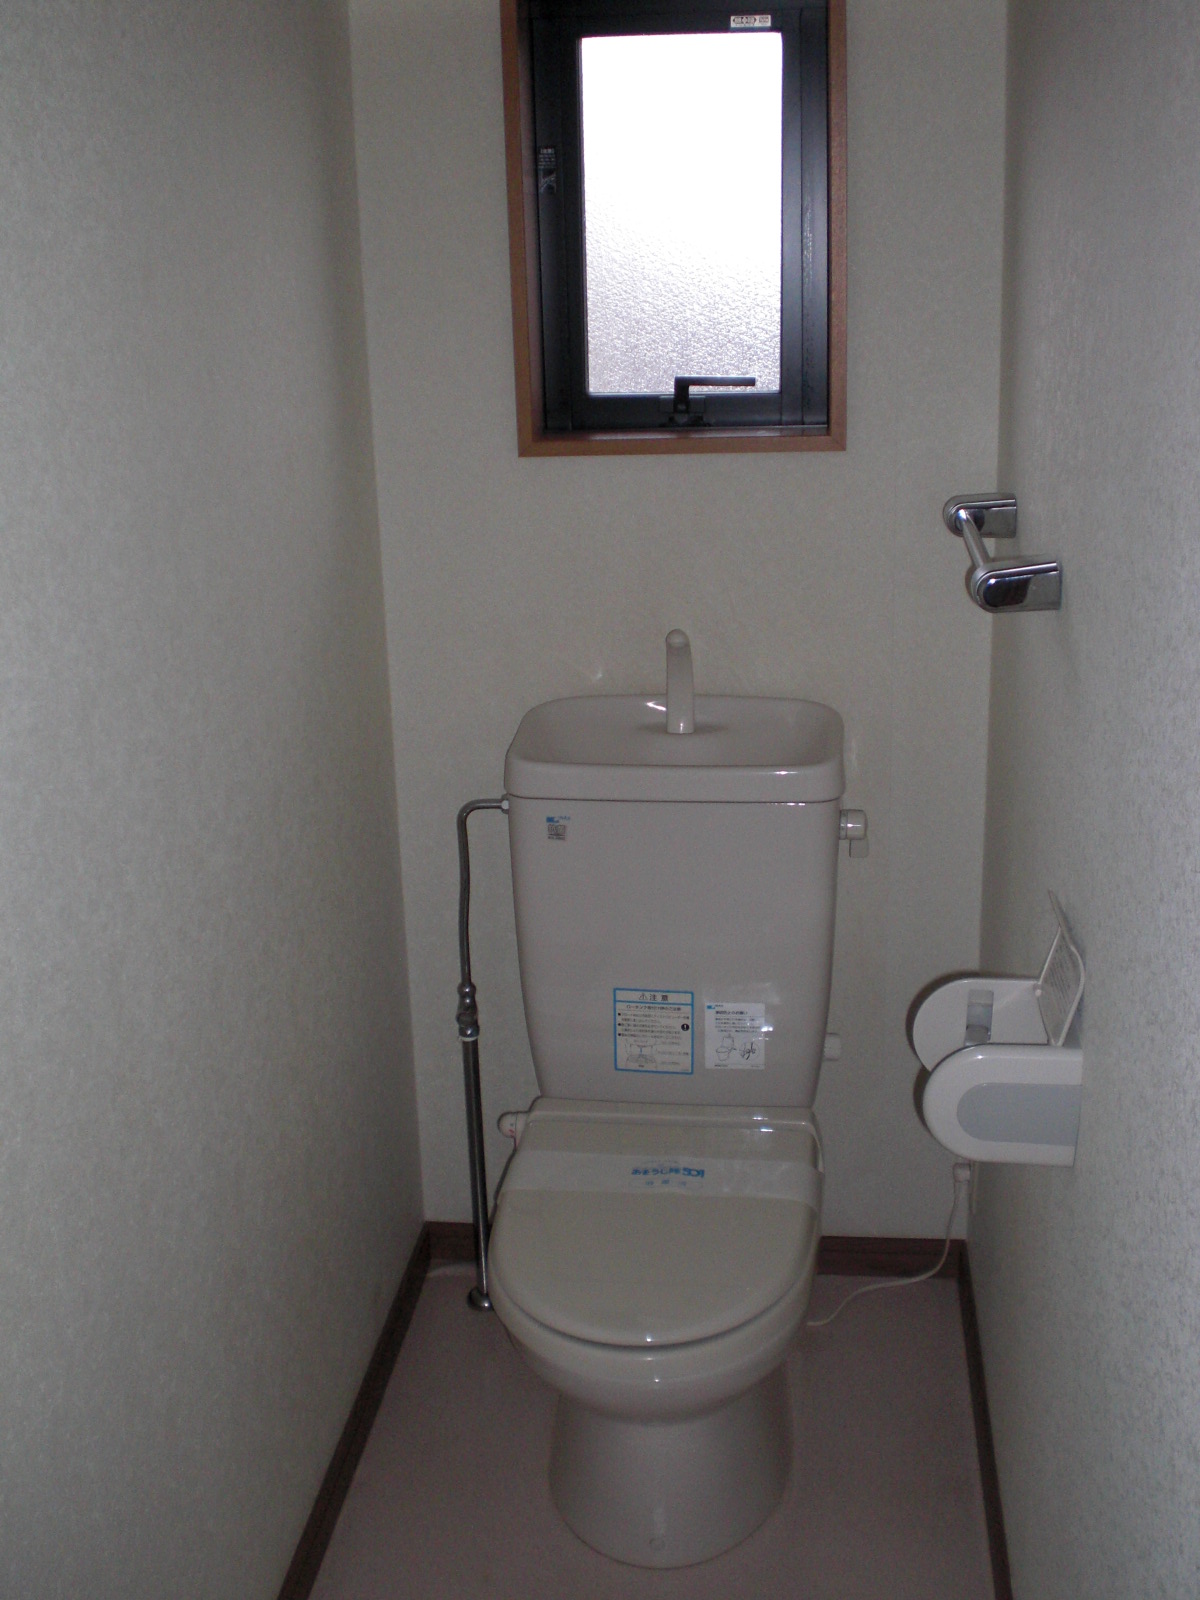 Toilet. Flush toilet of heating toilet seat